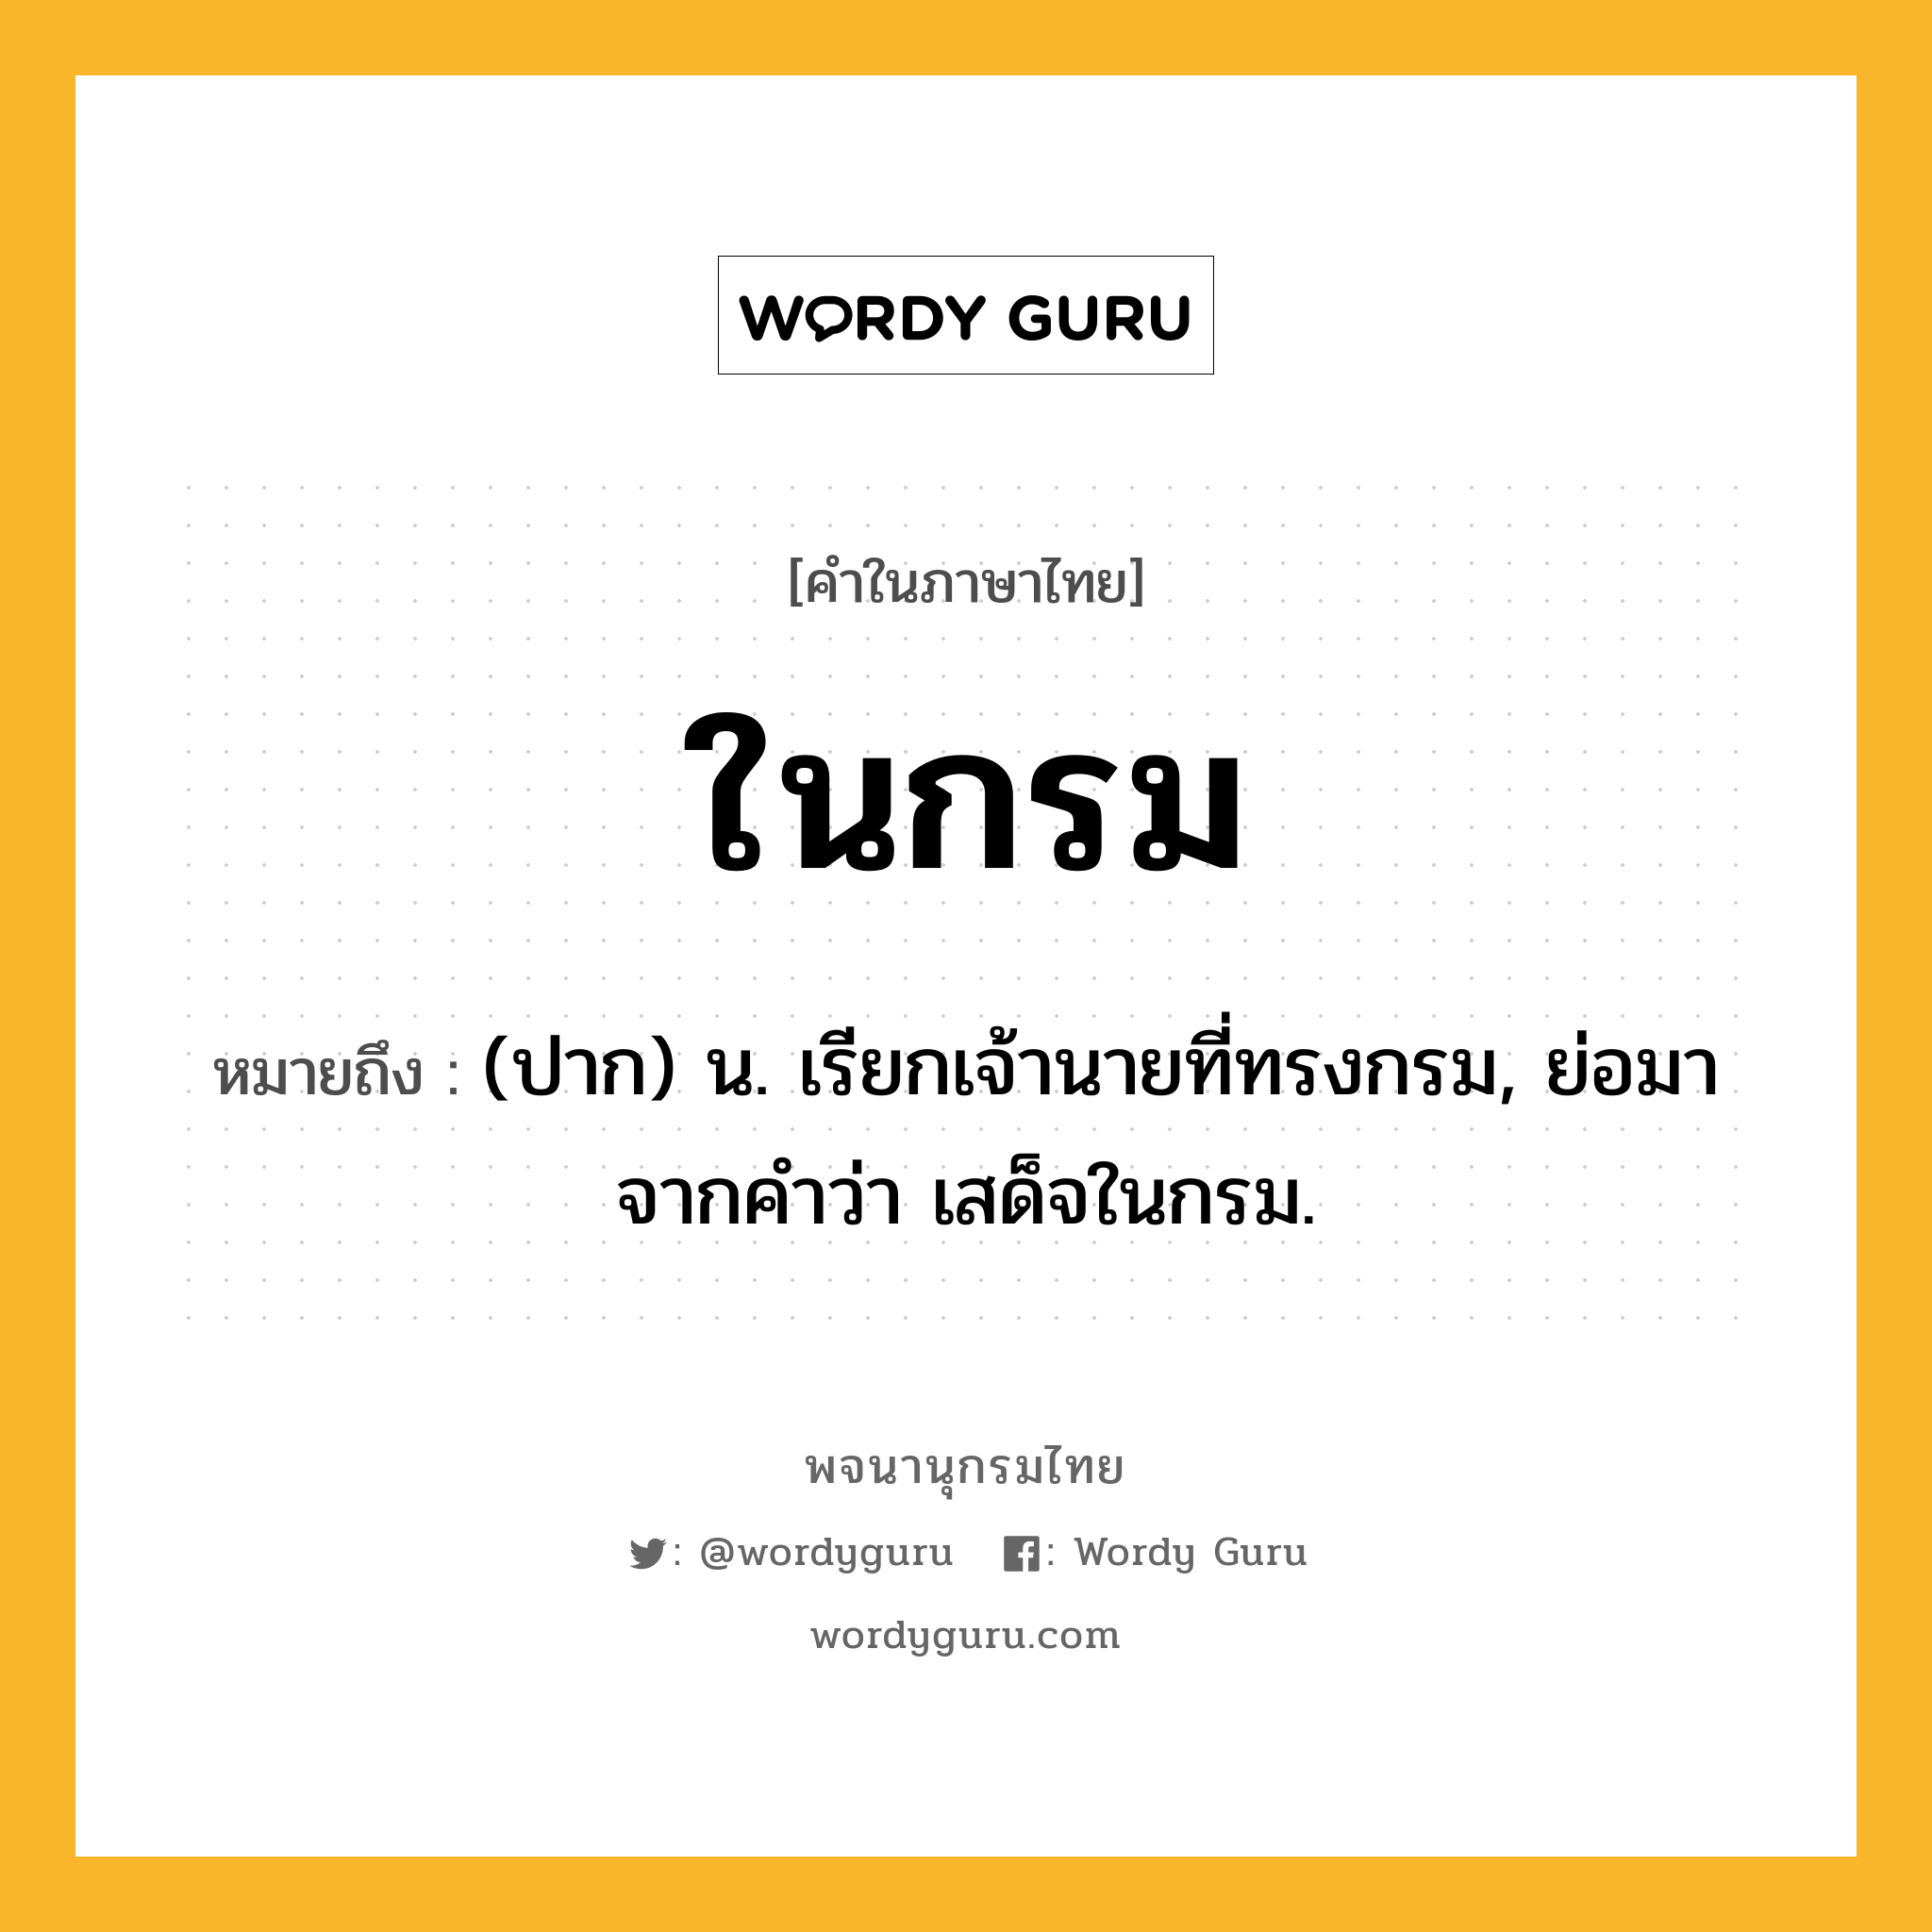 ในกรม หมายถึงอะไร?, คำในภาษาไทย ในกรม หมายถึง (ปาก) น. เรียกเจ้านายที่ทรงกรม, ย่อมาจากคําว่า เสด็จในกรม.